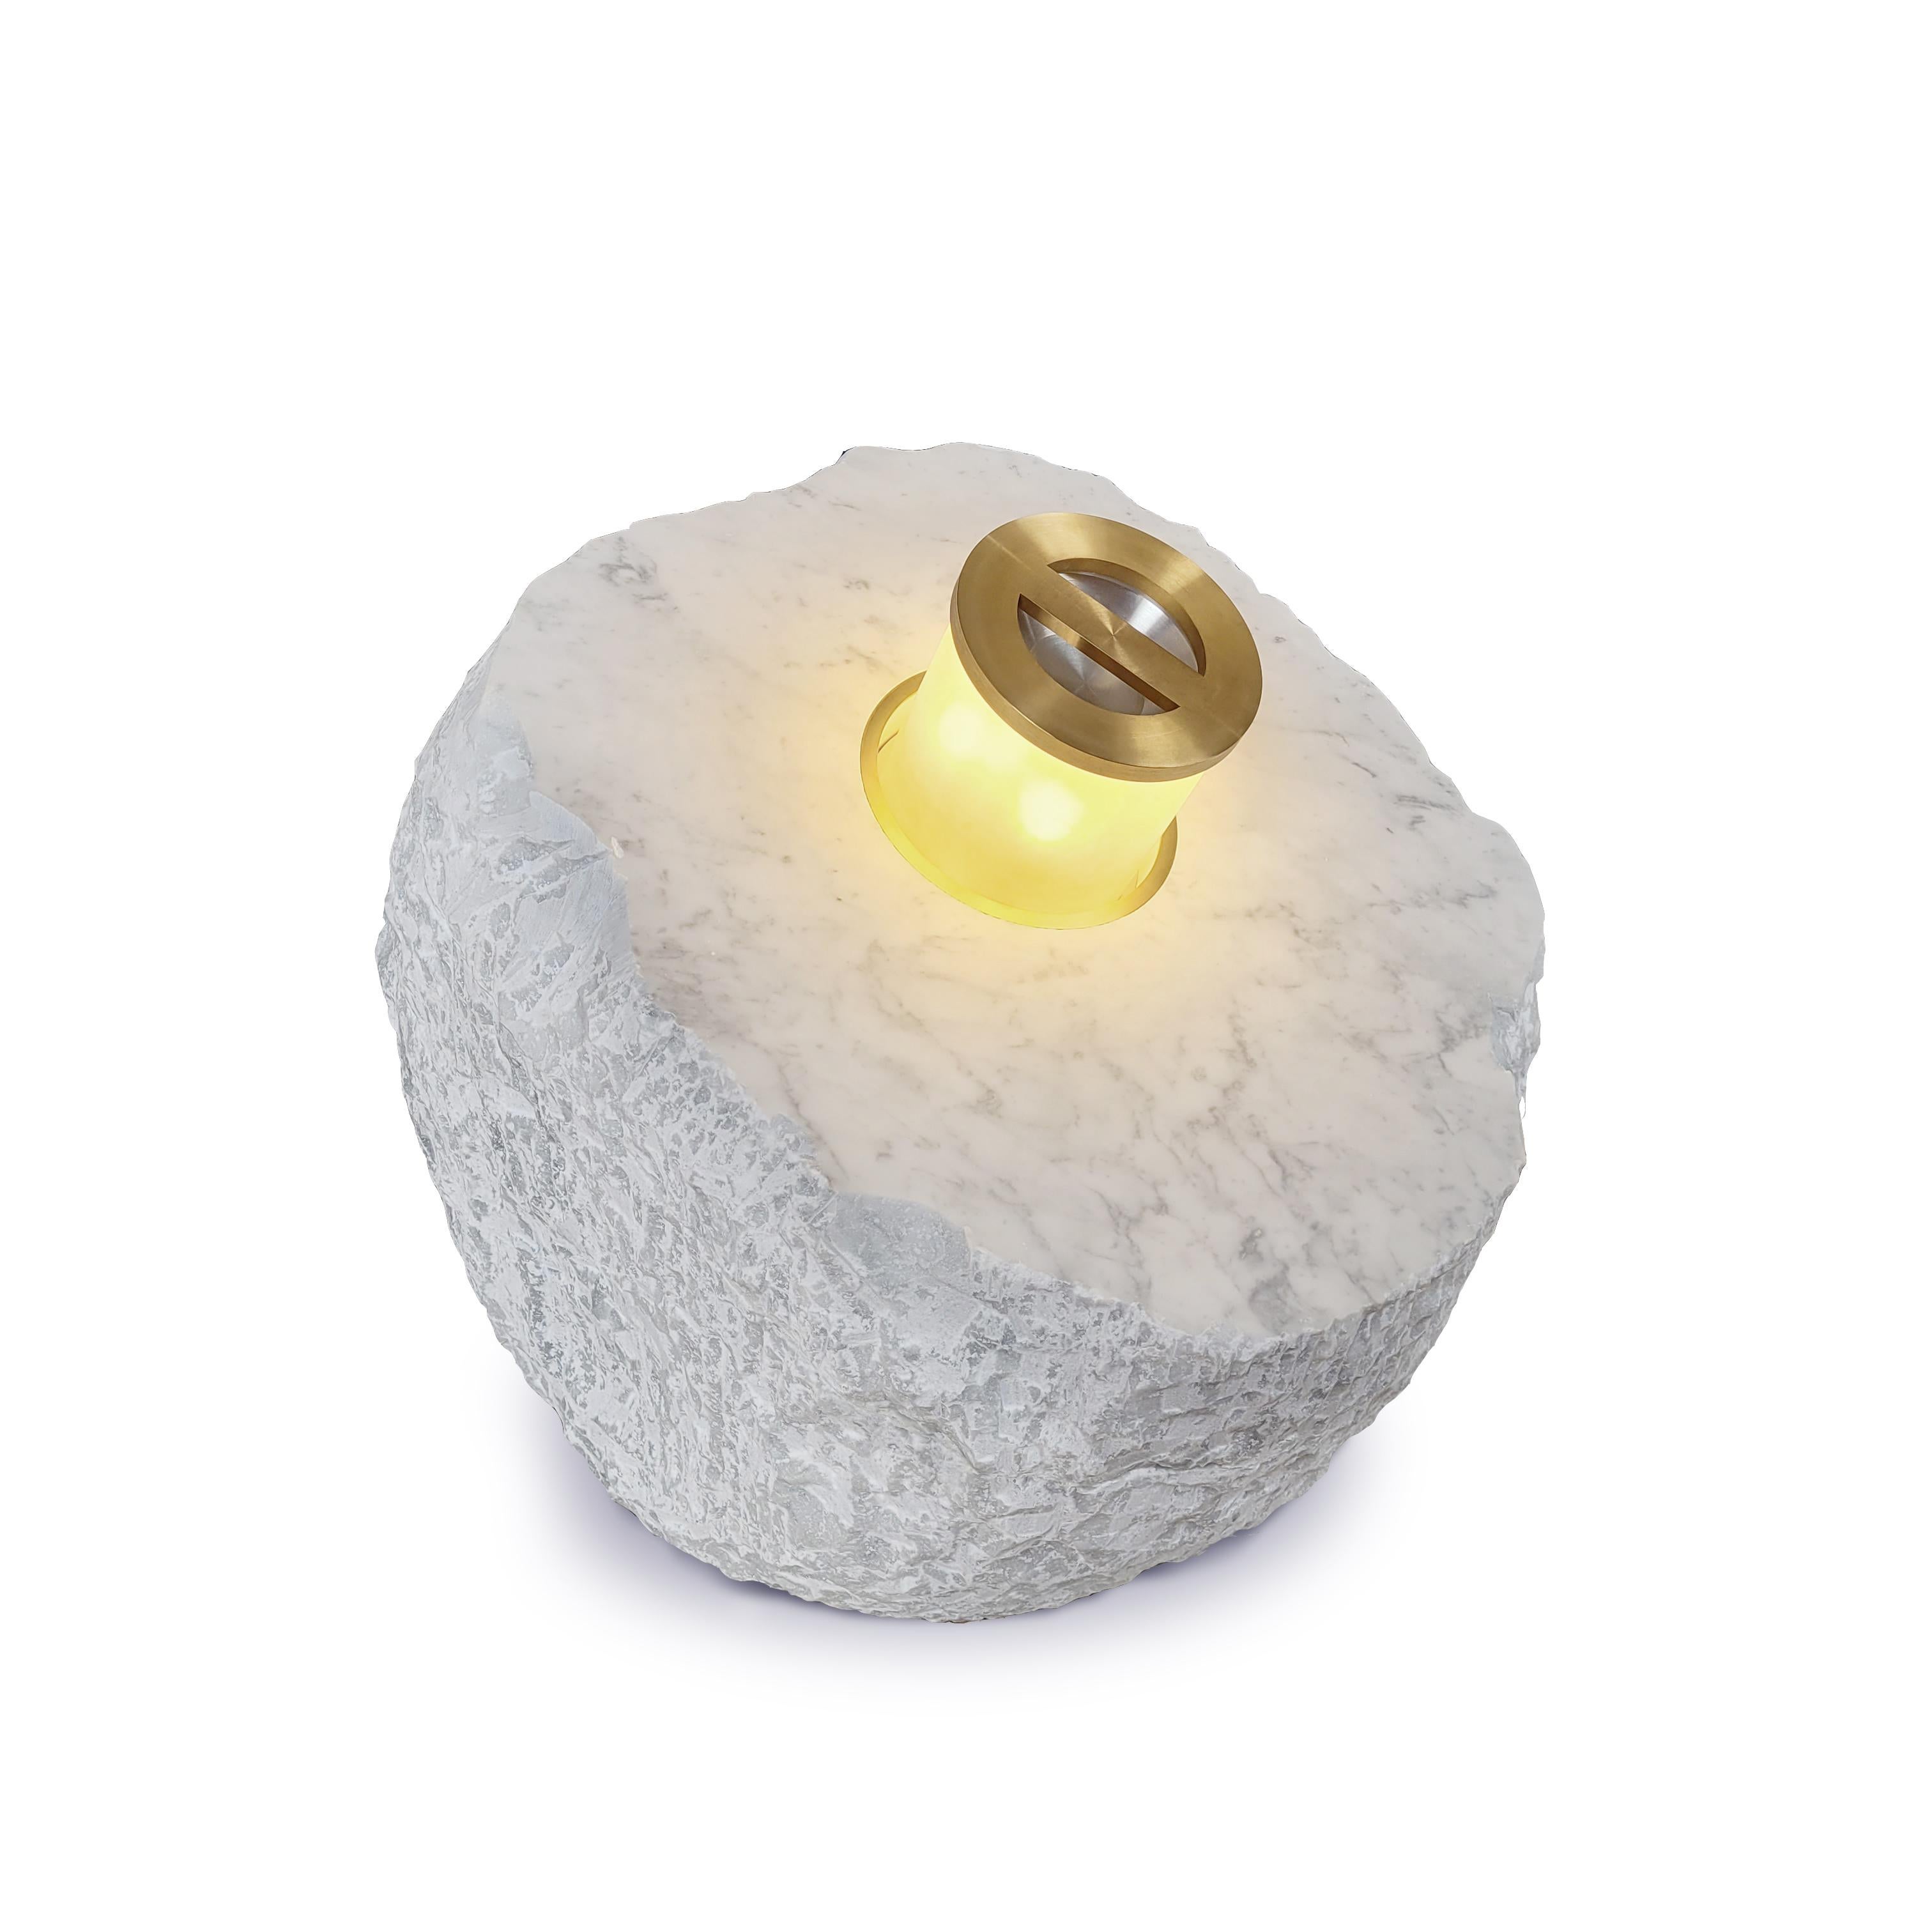 Lampe Stone Kinetic de Jan Garncarek
Dimensions : P 68 x L 86 x H 71 cm
MATERIAL : Laiton, verre, pierre de marbre de Carrare.
Conçu par Jan Garncarek en coopération avec la société Granity Skwara / 2022

Informations :
poids : 572 kg / 1261